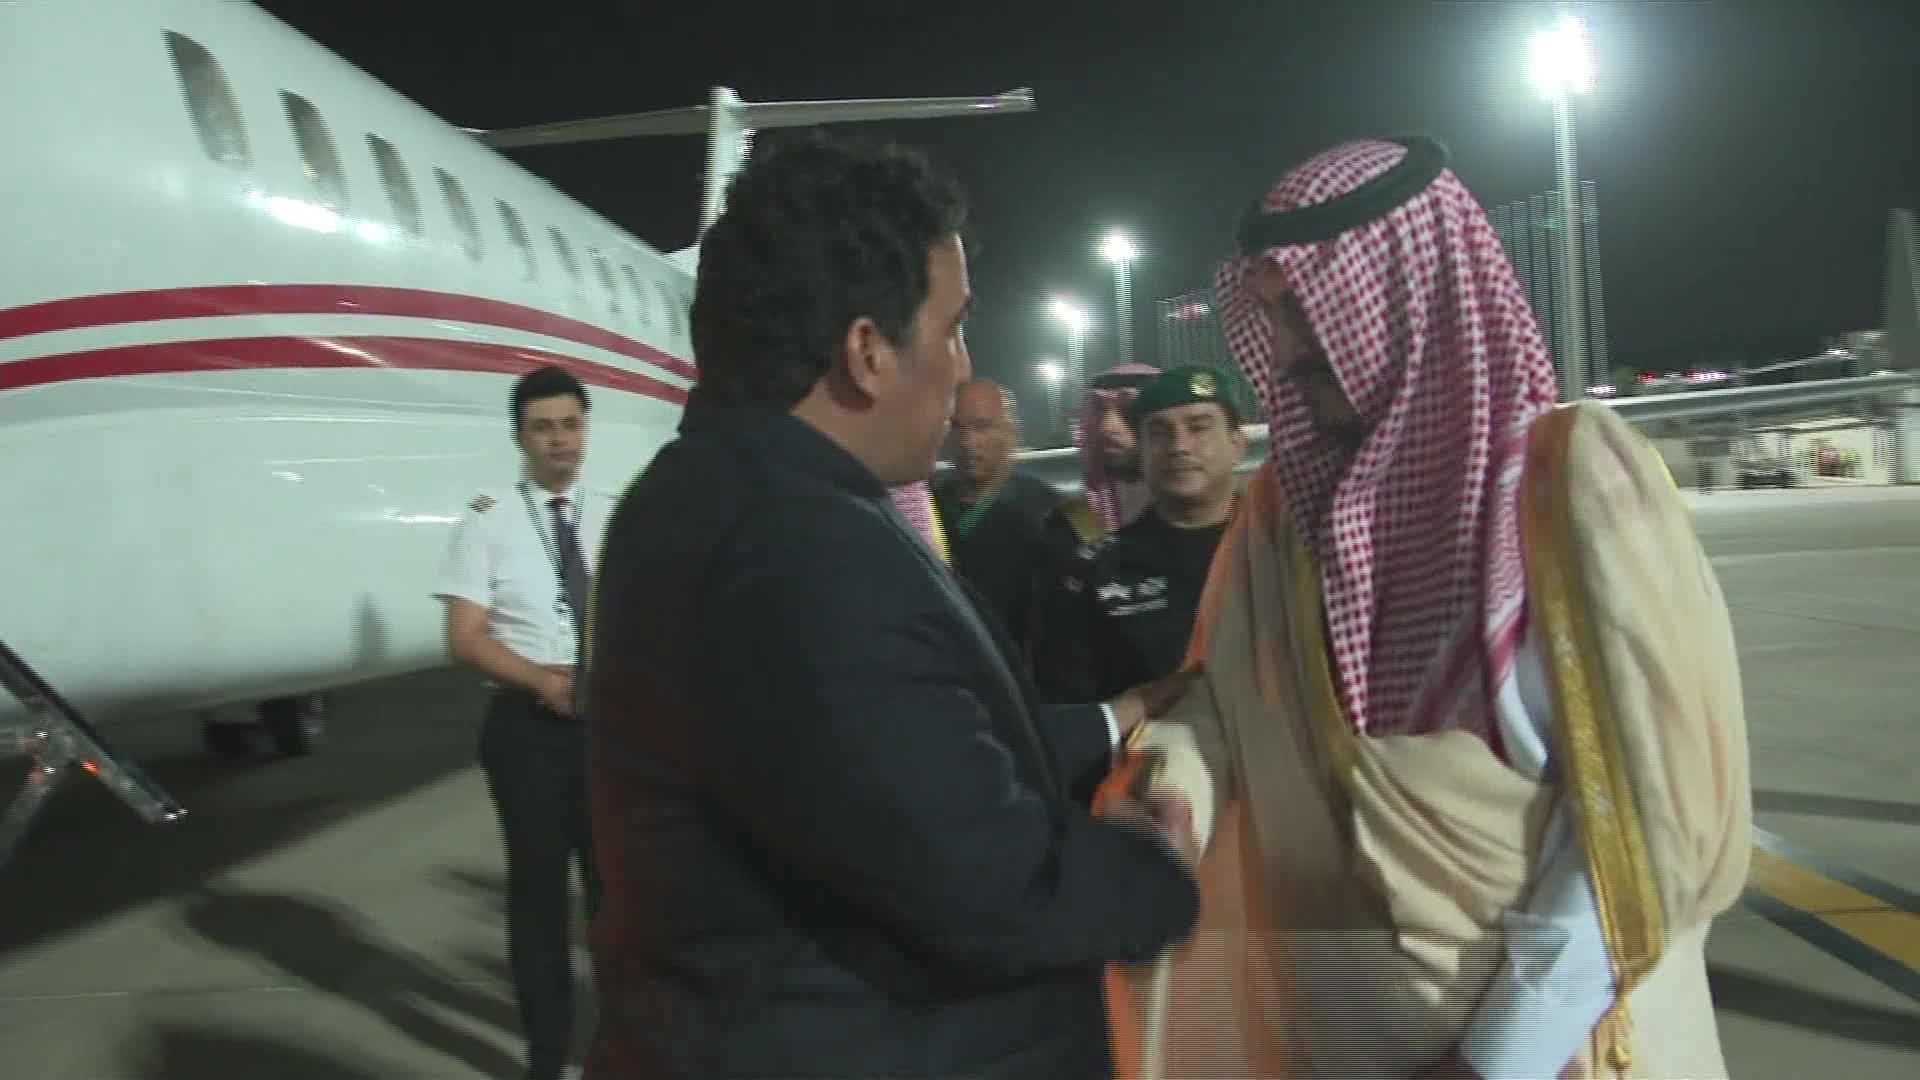 السعودية رئيس المجلس الرئاسي الليبي محمد المنفي يصل الي جد...للمشاركة في القمة العربية - snapshot 3.92